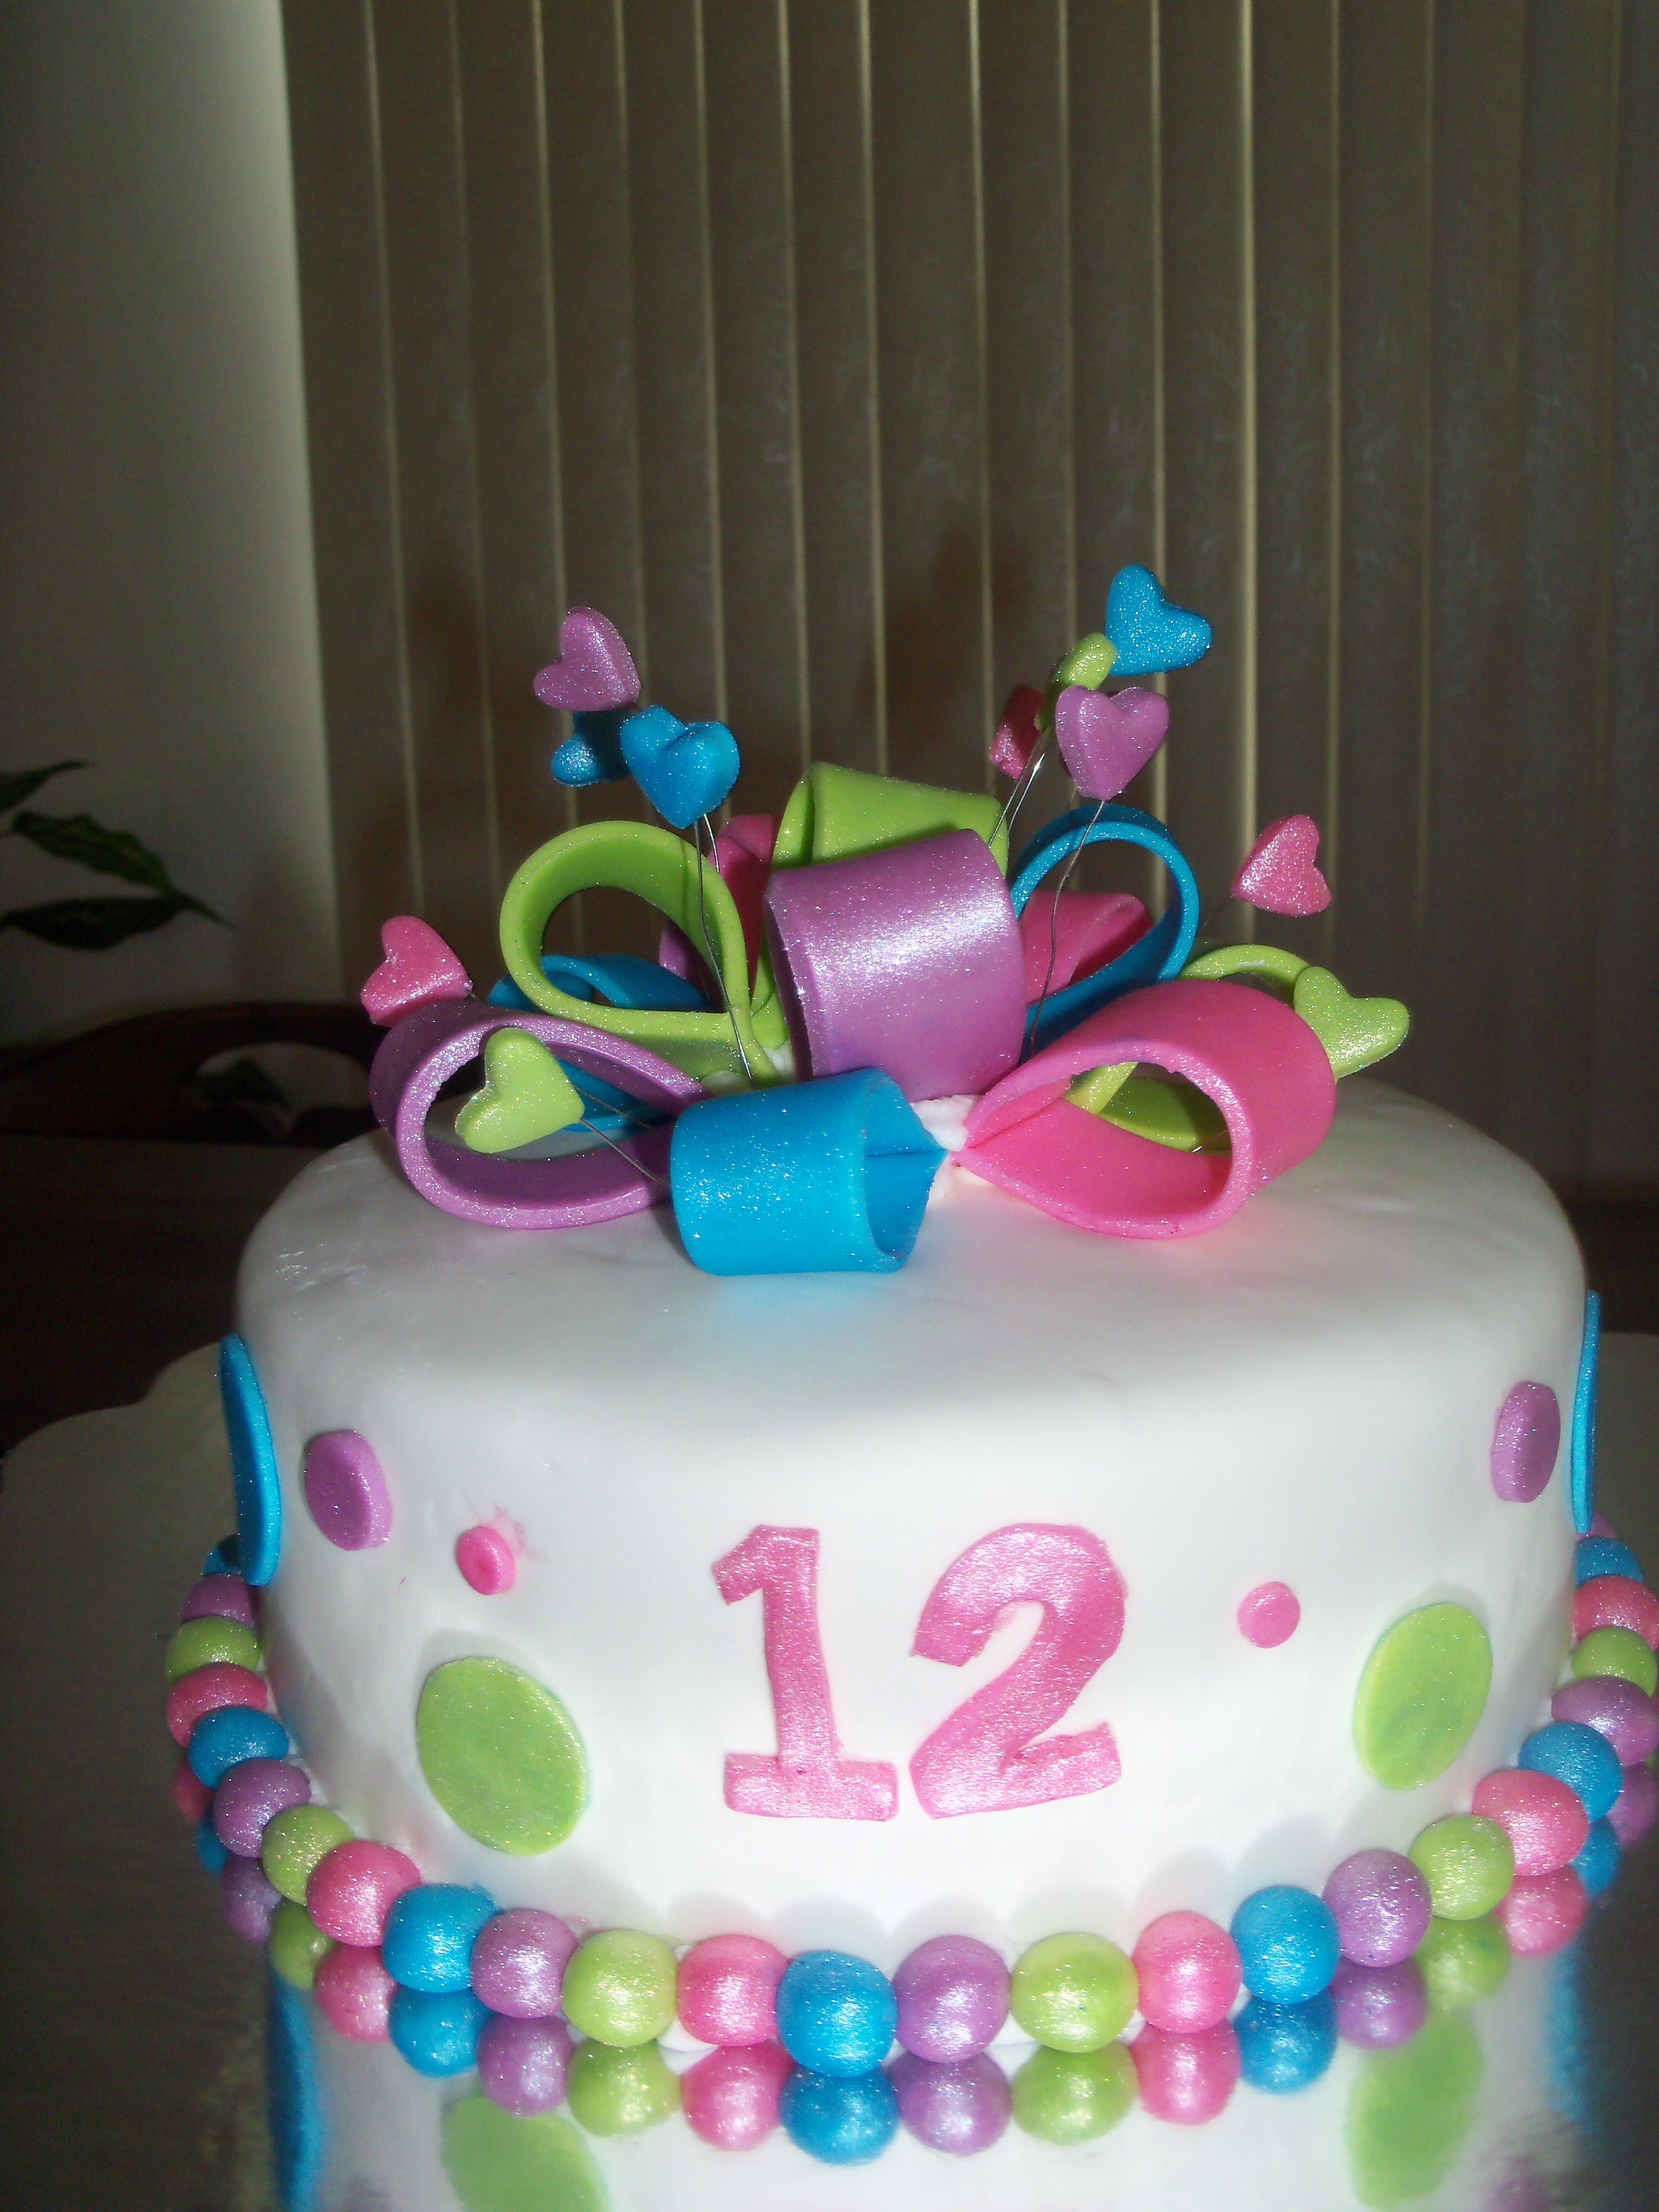 Торт 12 кг. Торт на 12 лет. Торт для девочки 12 лет. Торт для мальчика 12 лет на день рождения. Торт для девочки 12 лет фото.